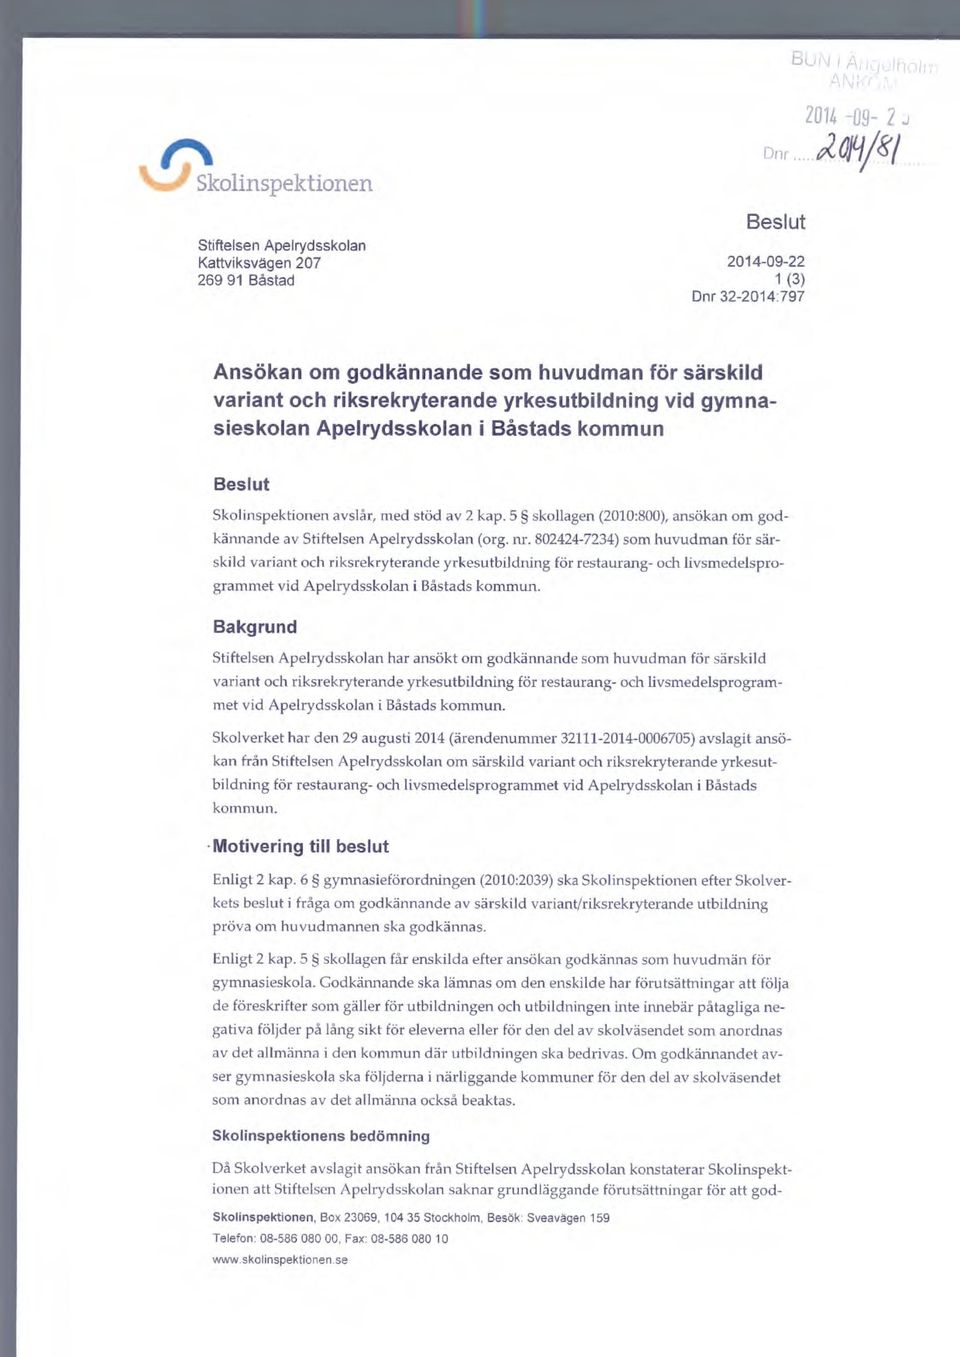 5 skollagen (2010:800), ansökan om godkännande av Stiftelsen Apelrydsskolan (org. nr.